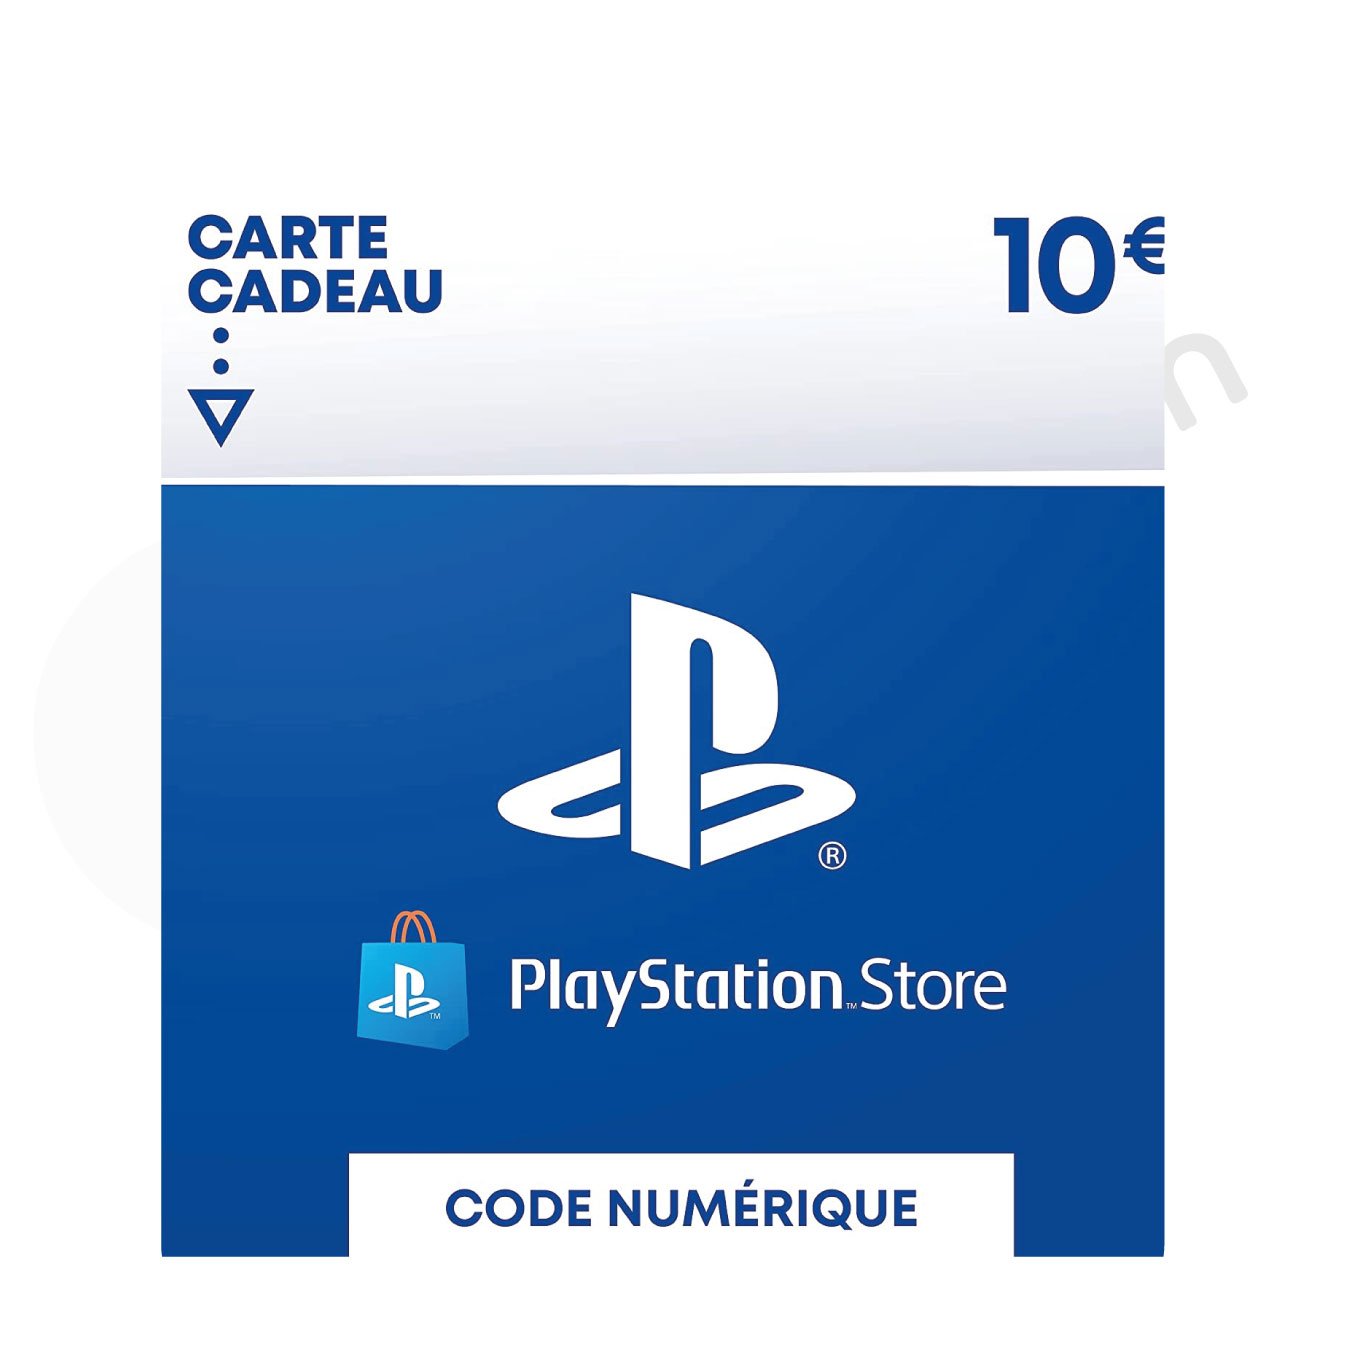 Carte cadeau PlayStation Store pour le Sénégal, idéale pour acheter des jeux sur PSN.